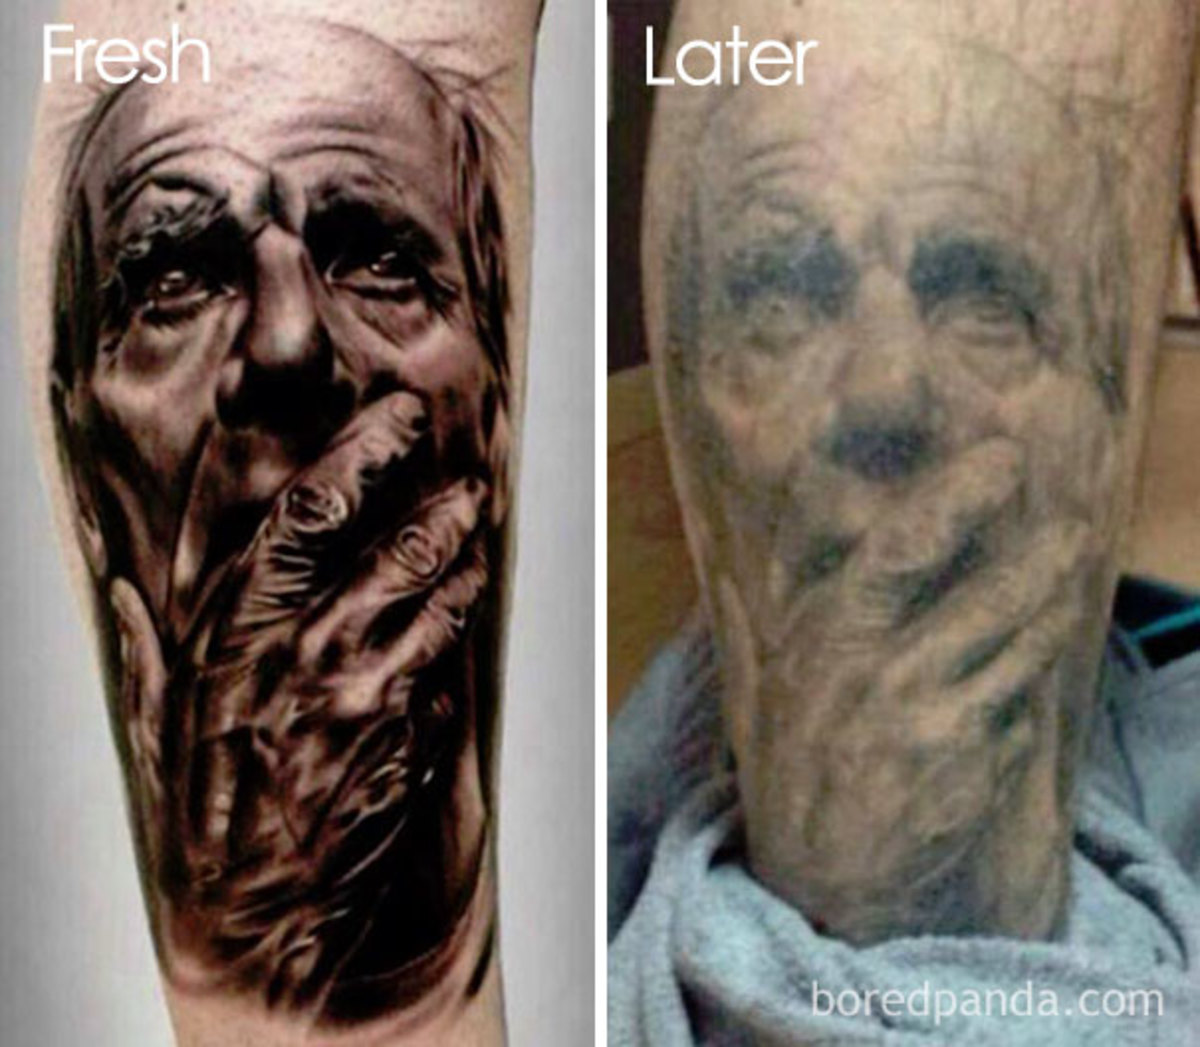 tetování-stárnutí-před-po-100-590ae37f2ed11__605